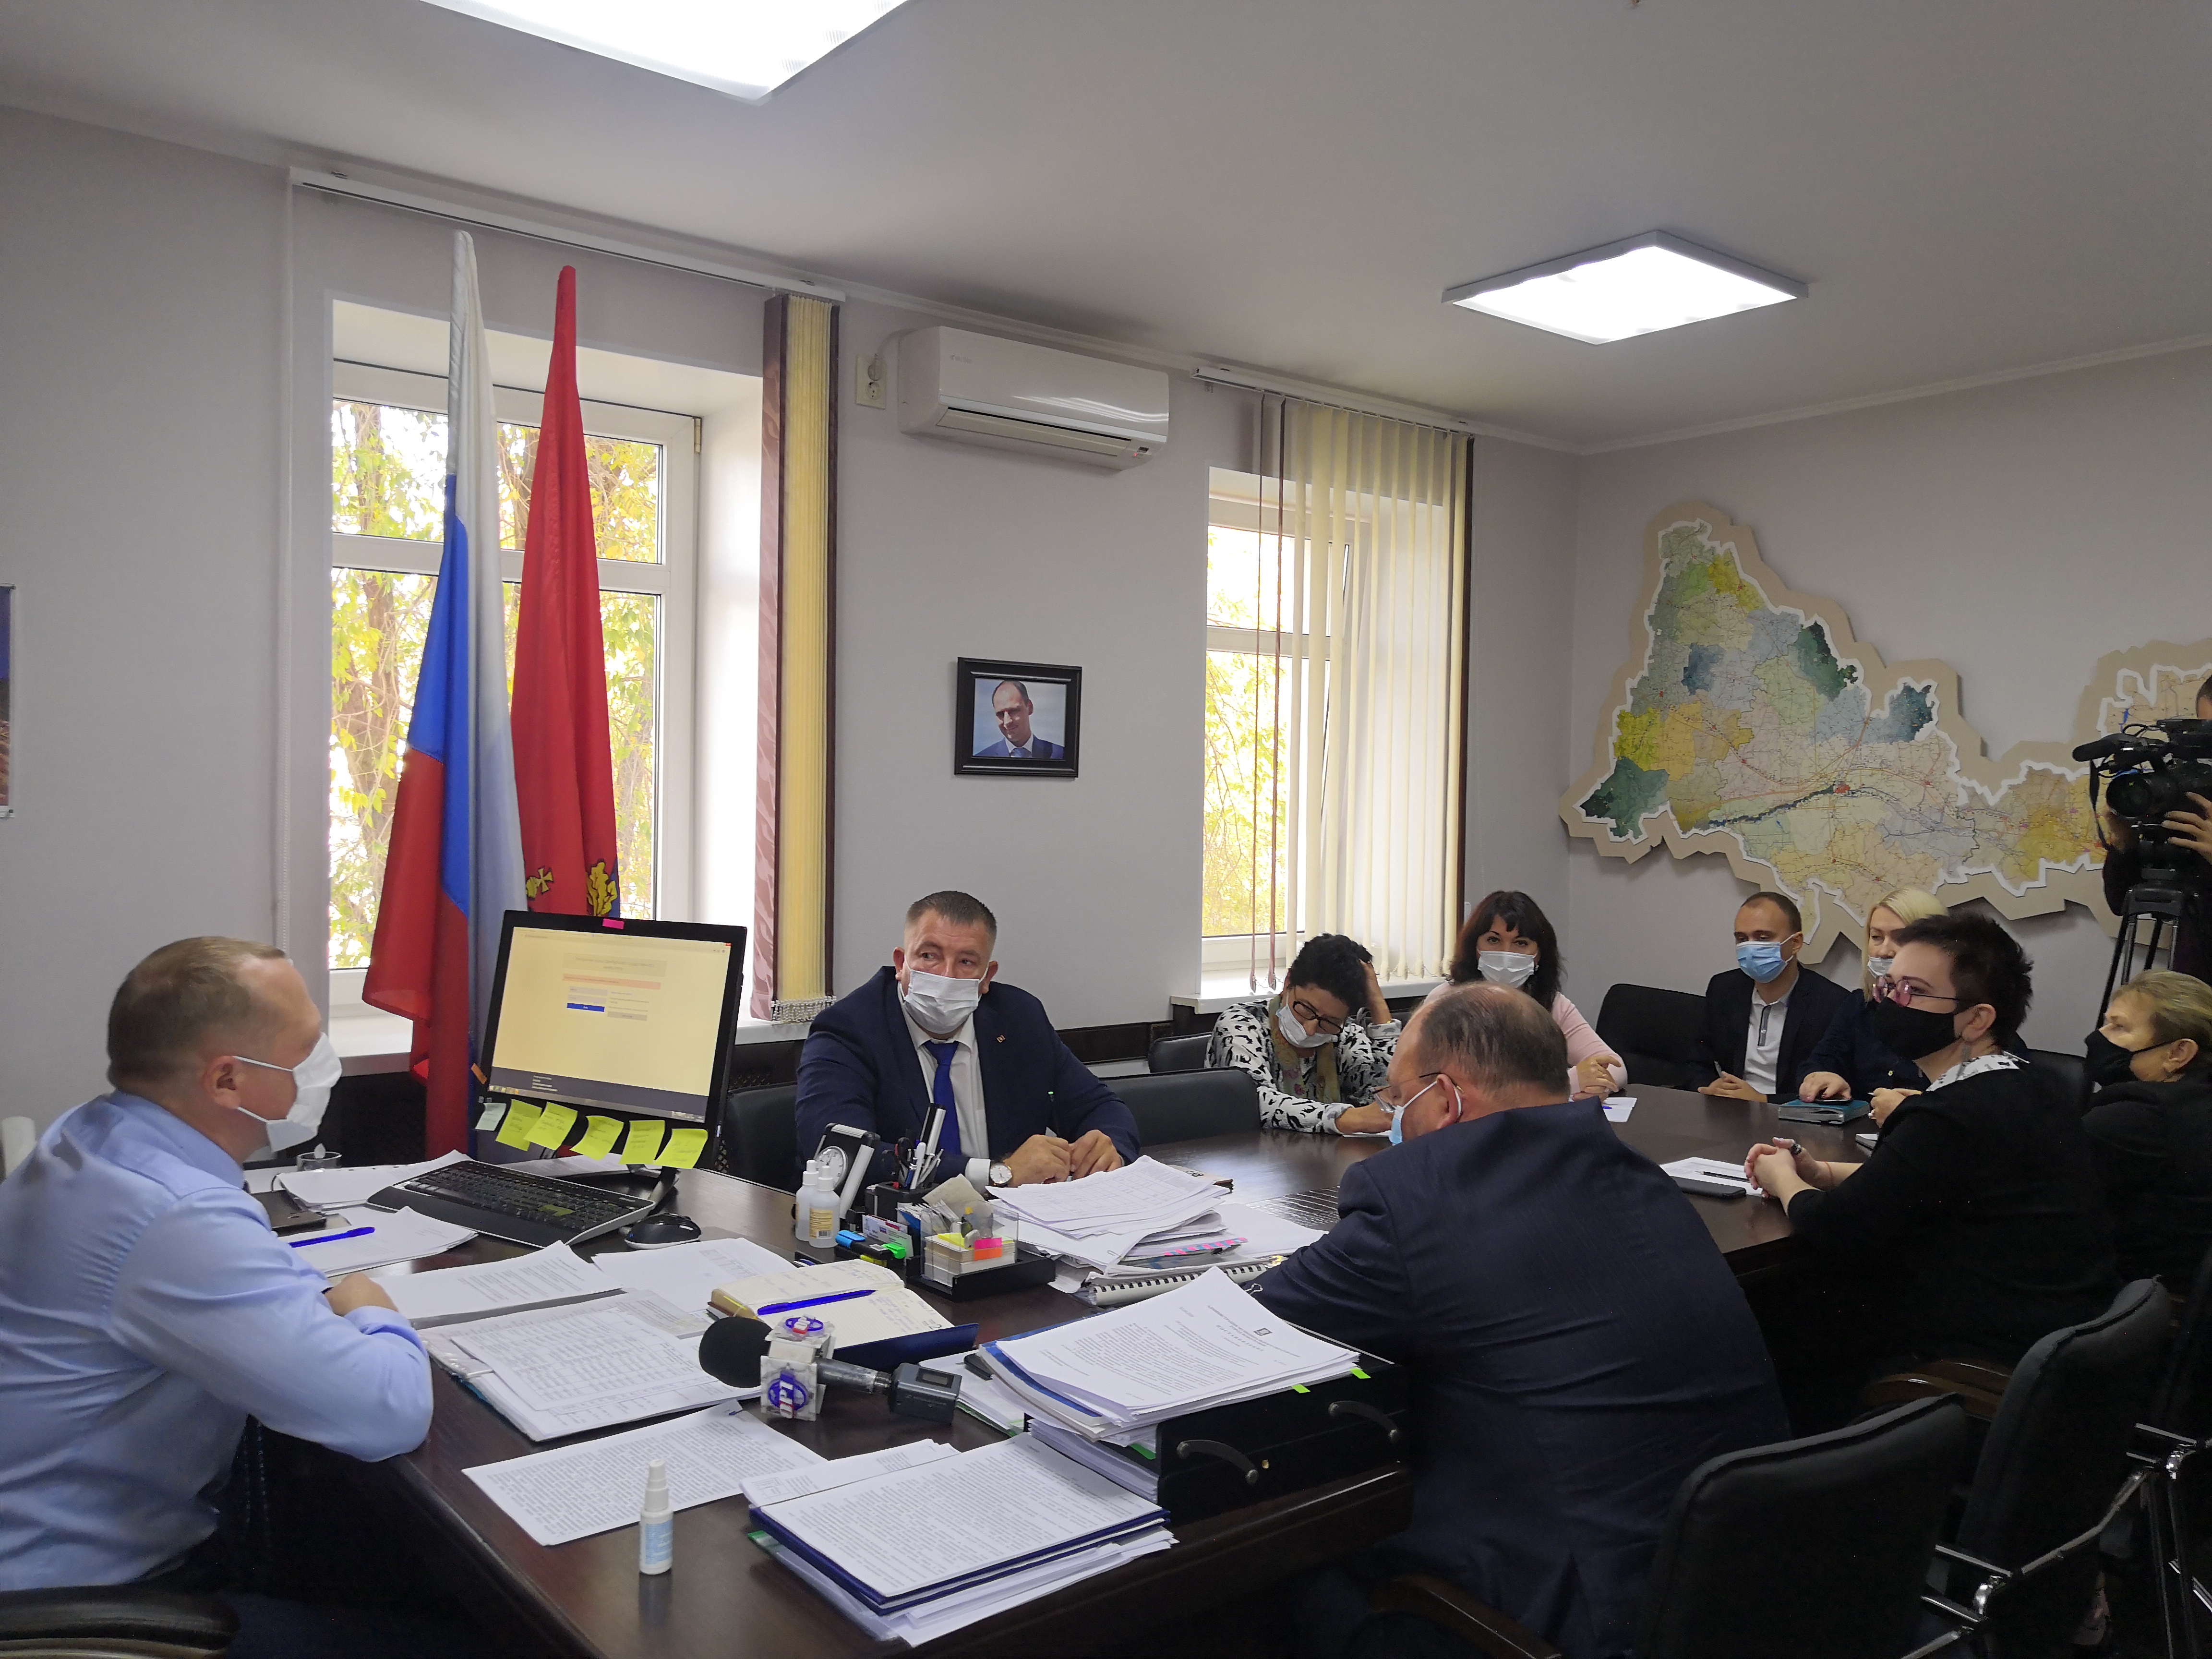 19 октября 2020г. состоялось первое заседание вновь сформированного Общественного совета при НО «Фонд модернизации ЖКХ Оренбургской области».